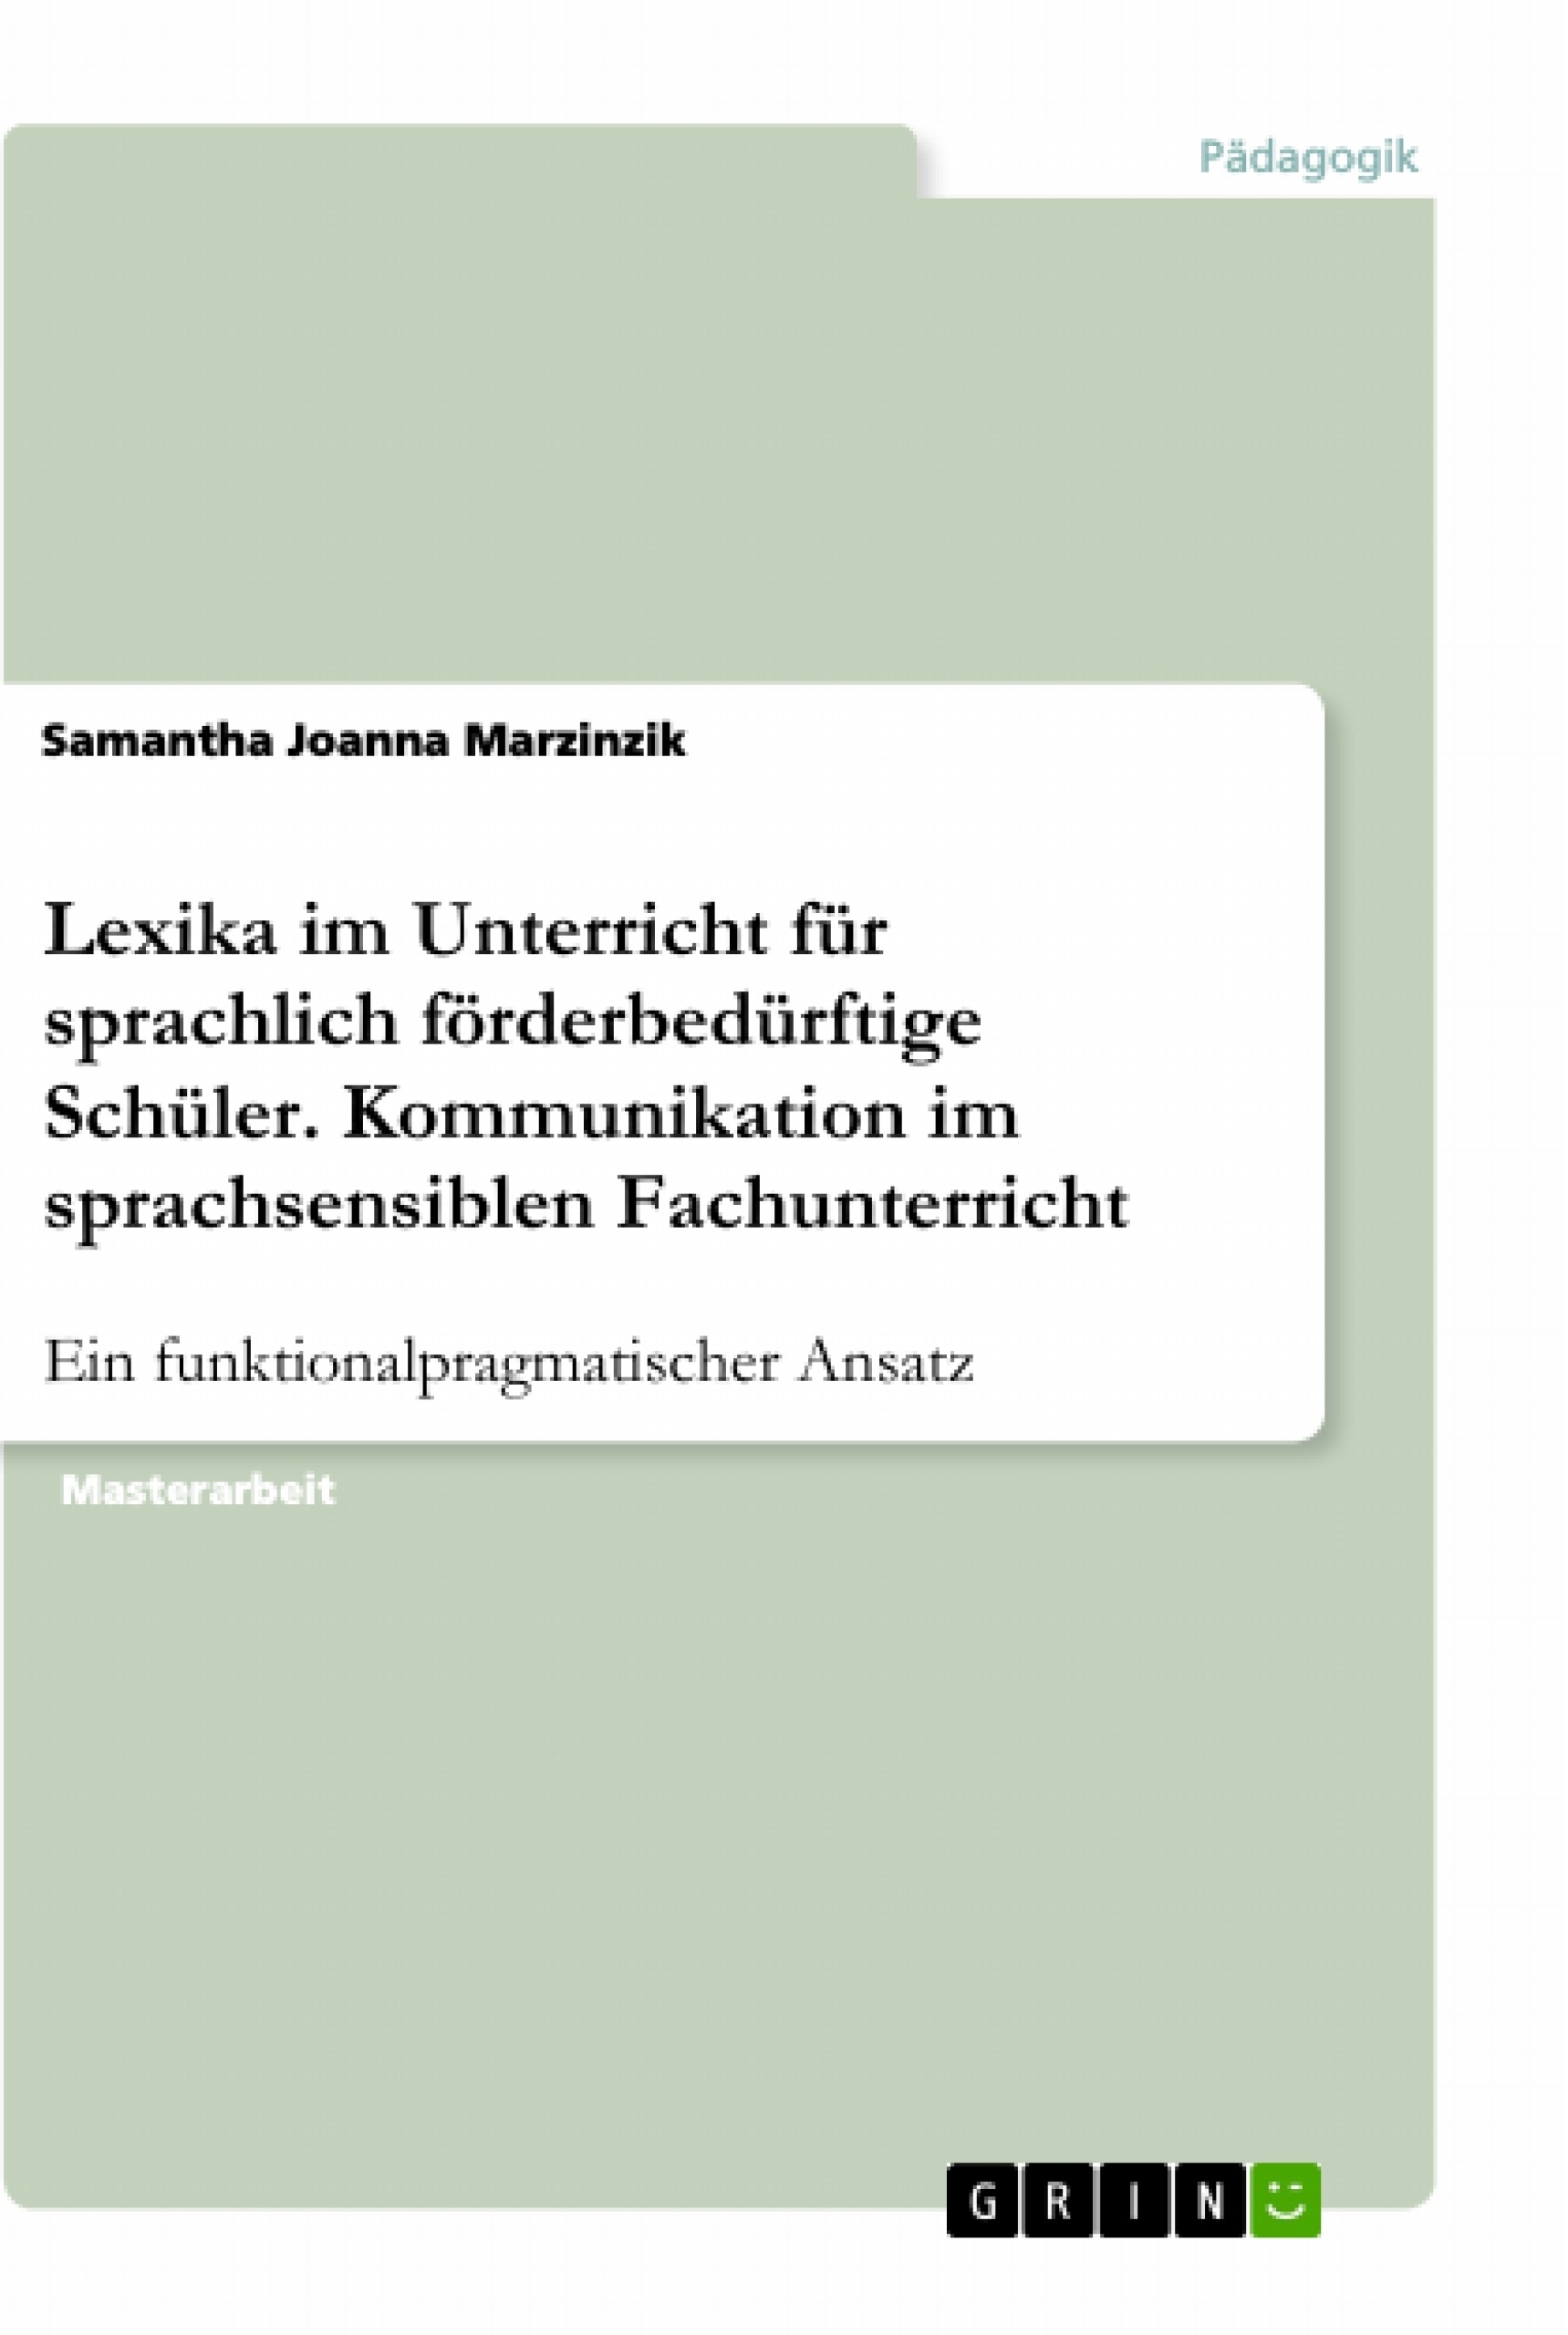 Title: Lexika im Unterricht für sprachlich förderbedürftige Schüler. Kommunikation im sprachsensiblen Fachunterricht